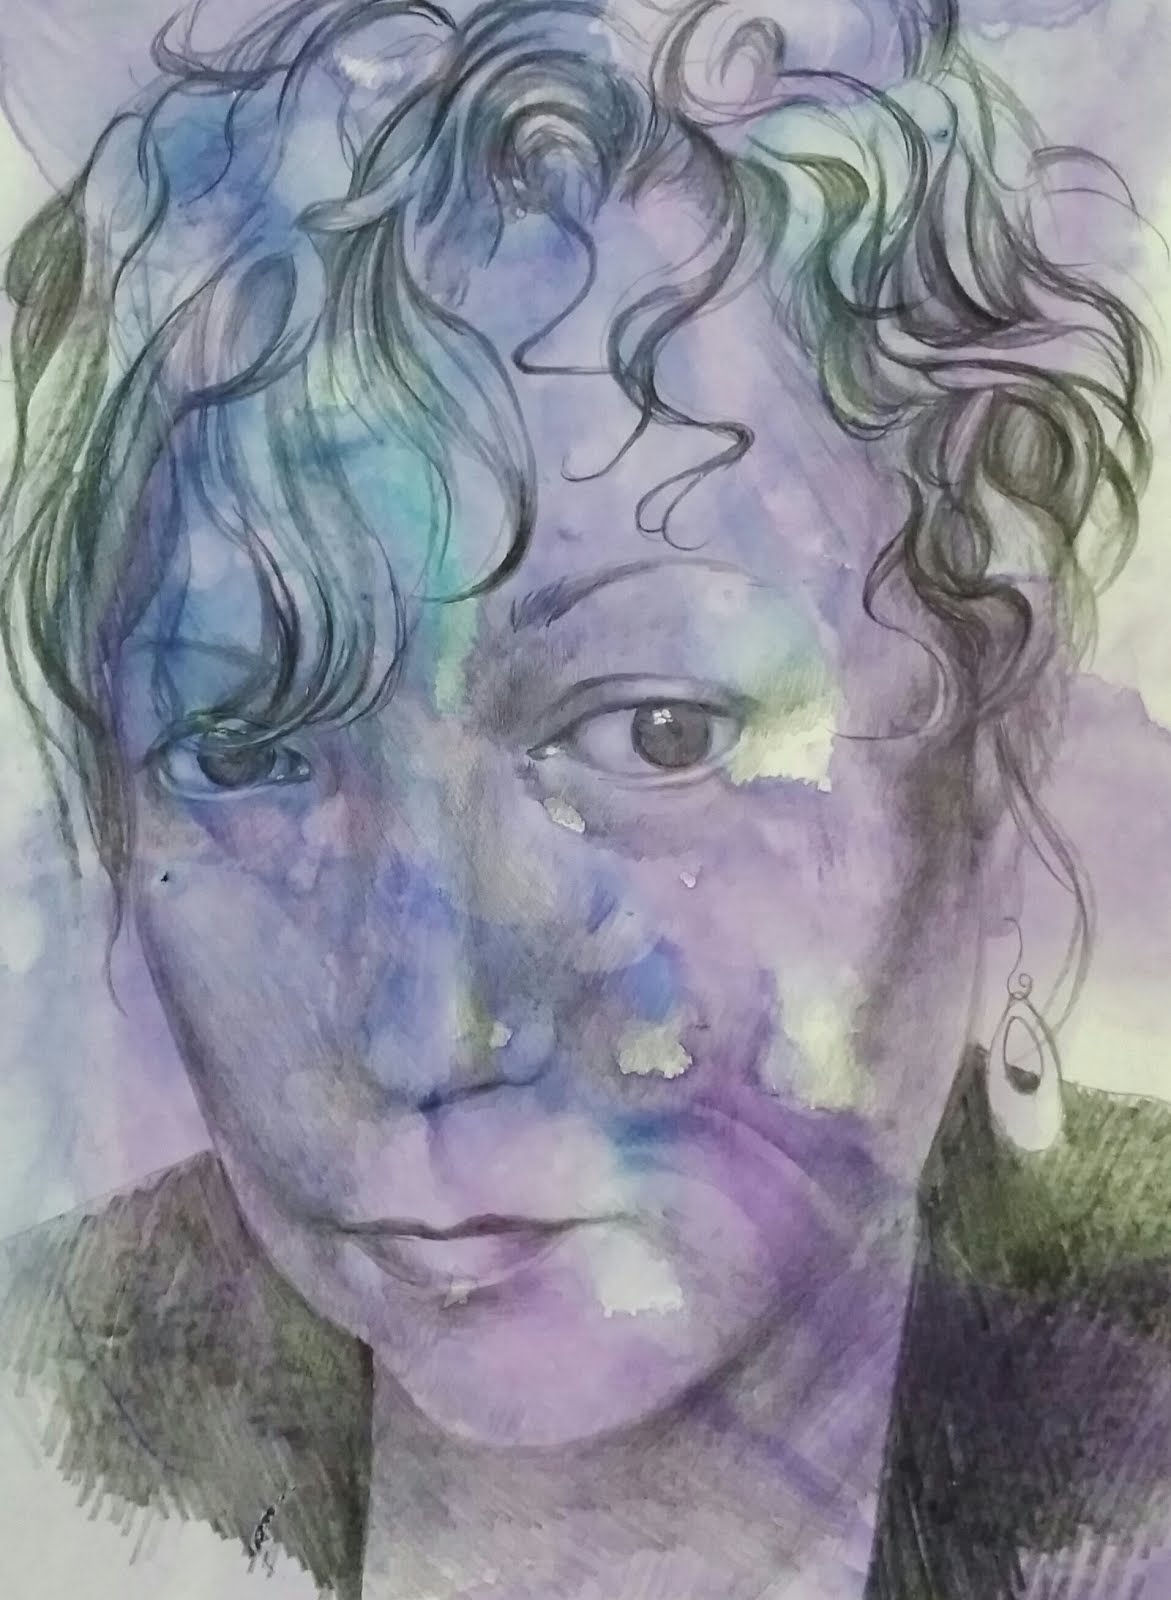 Self portrait, watercolor and graphite on Terraskin paper